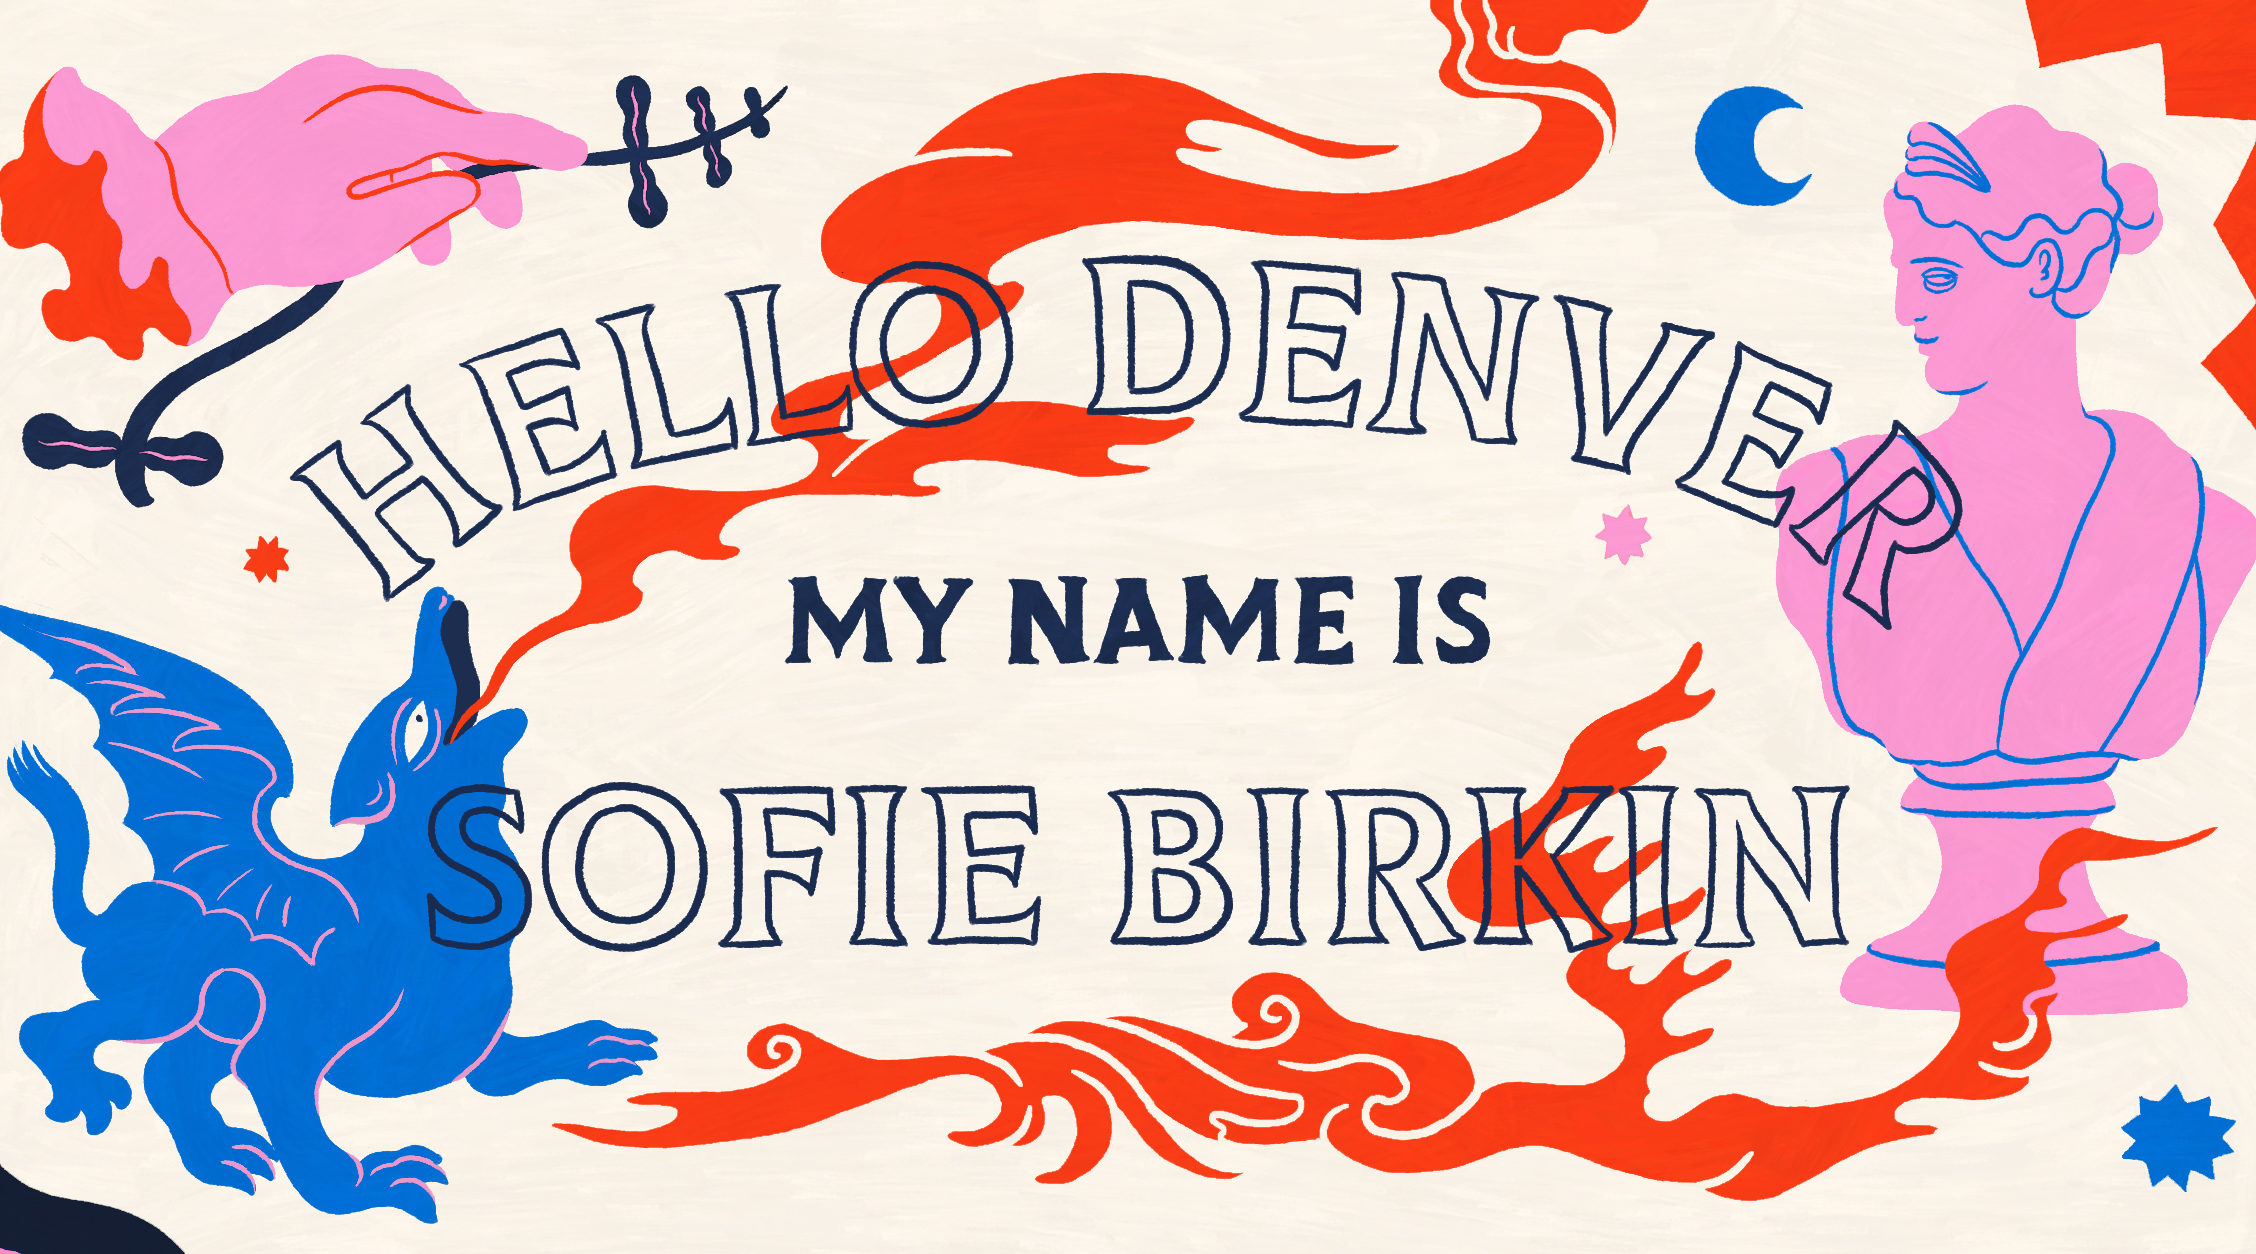 Sofie Birkin, Hello Denver, Hello Denver My Name Is, Cheyenne Dickerson, Madison McMullen, artist, graphic design, art, illustrator, 303 Magazine, 303 art, Cheeseman Park, Denver creatives